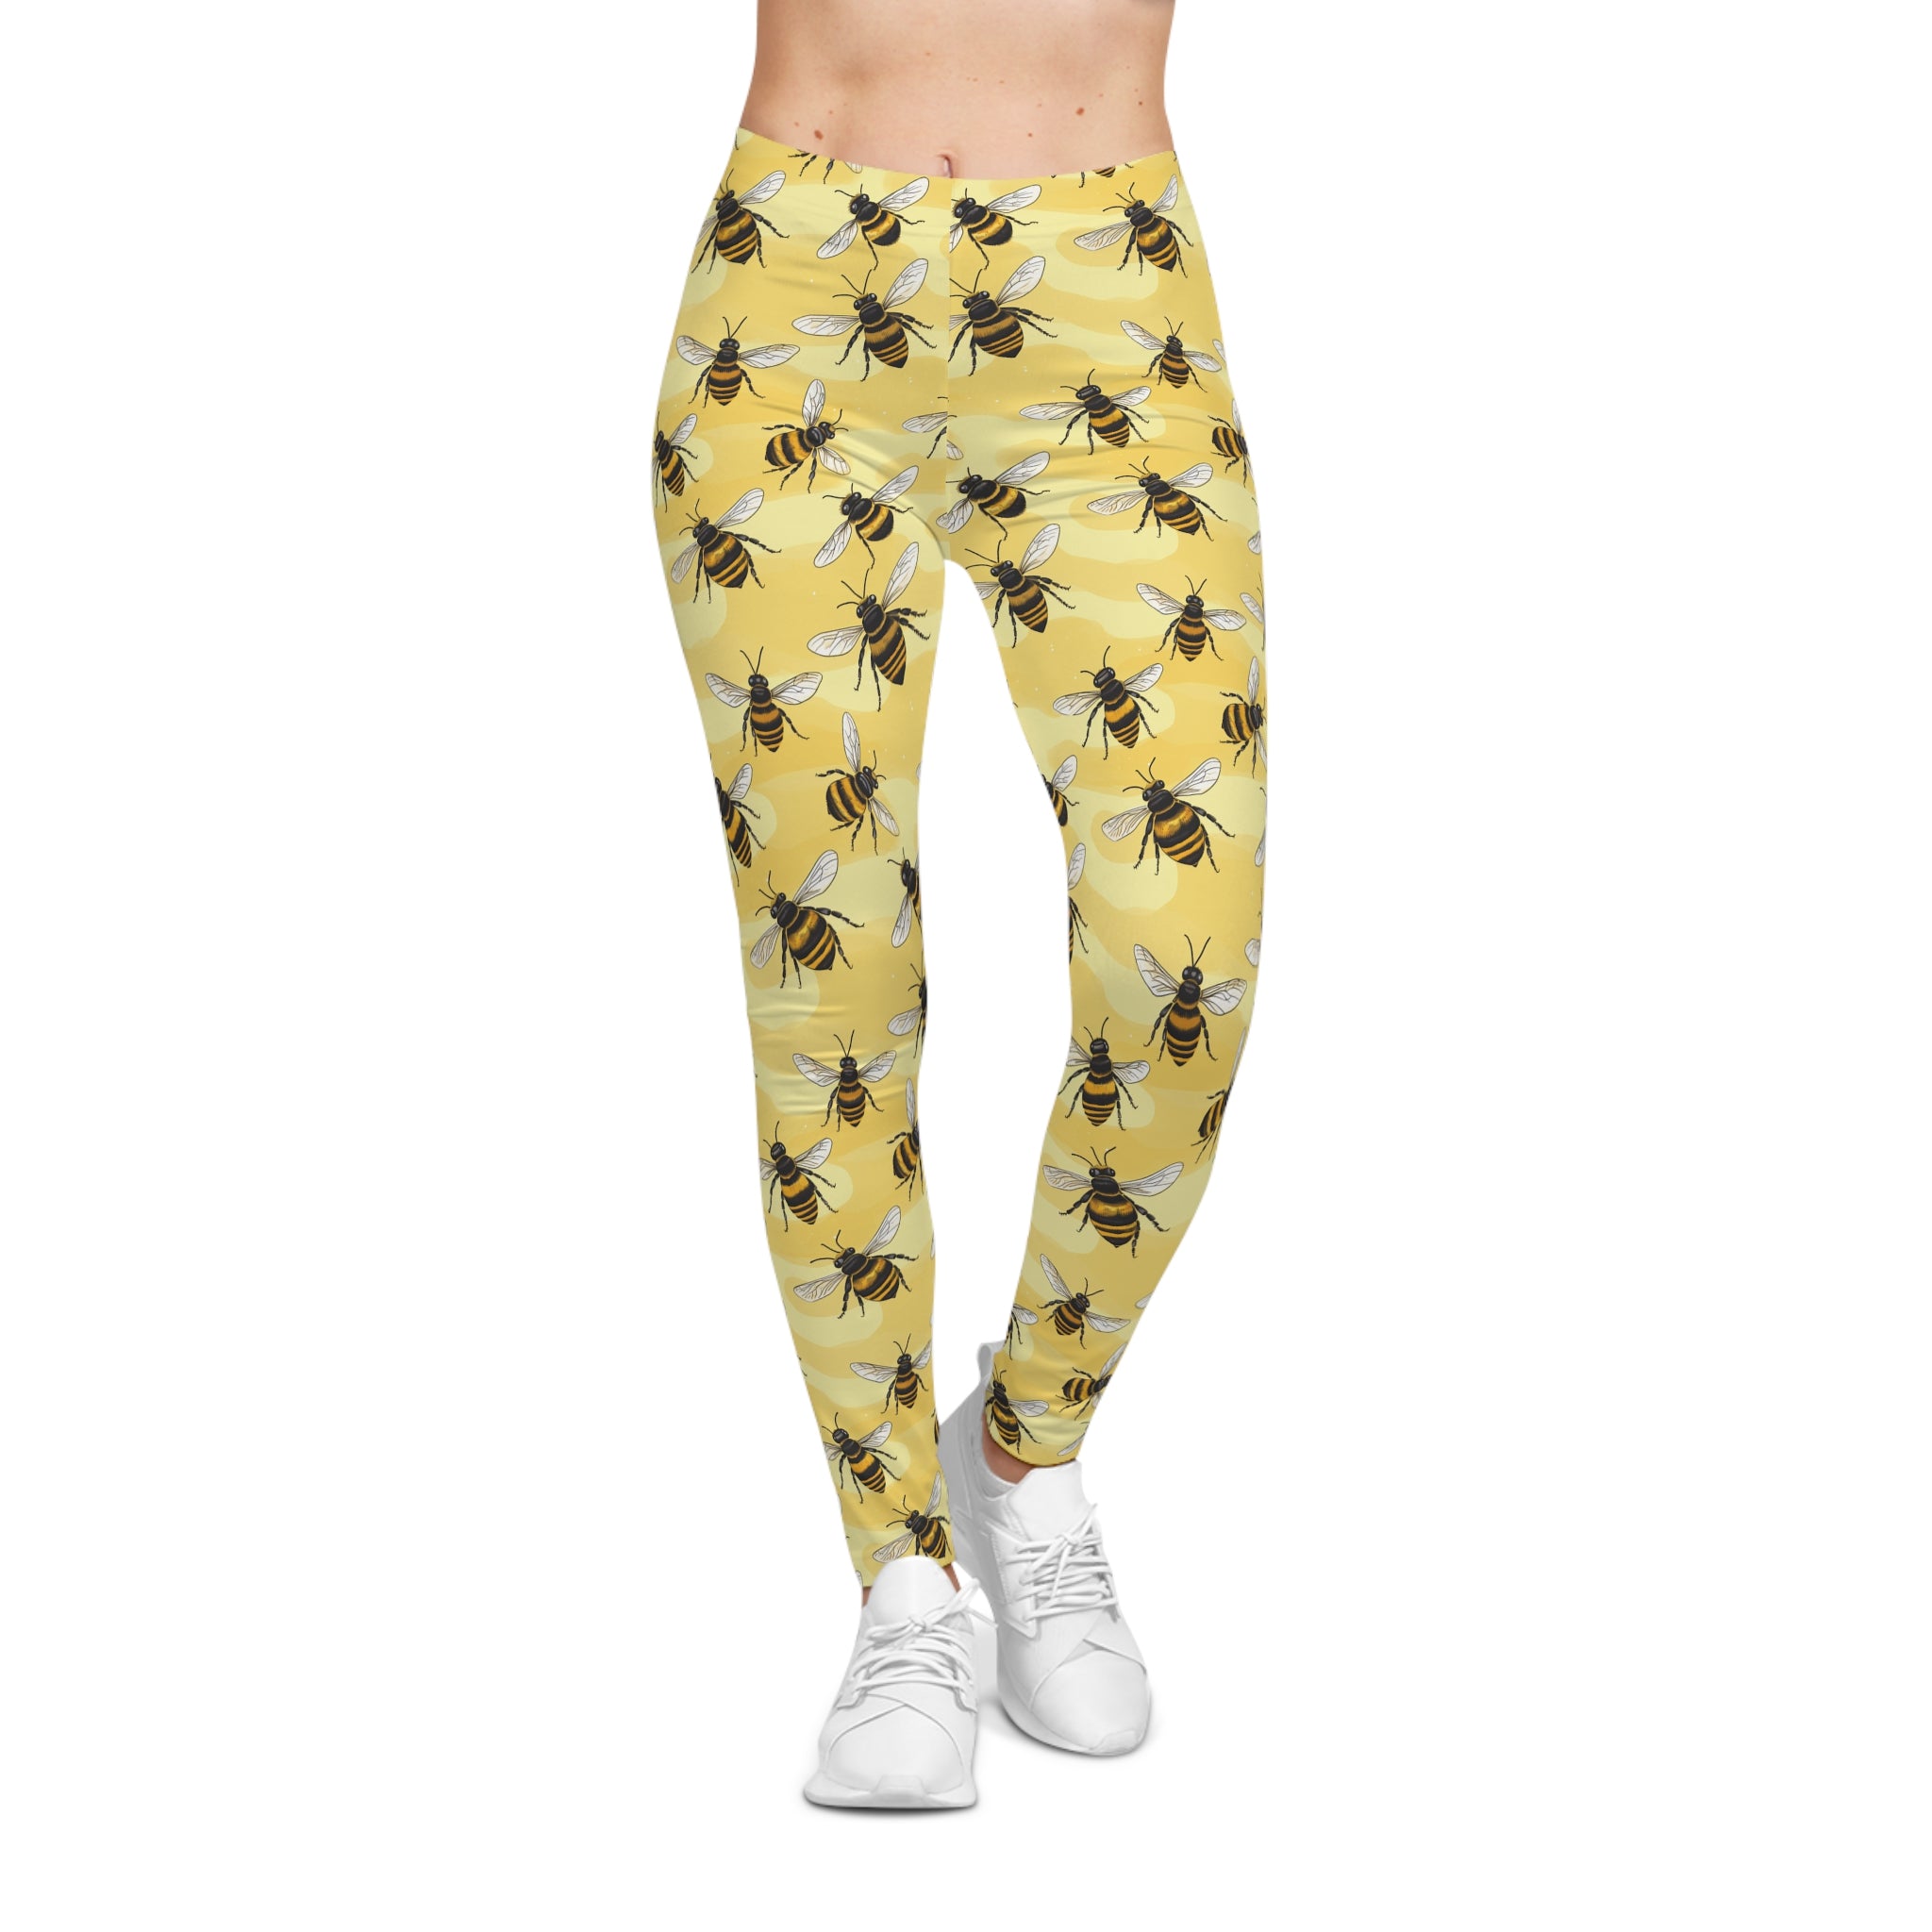 Stylish Bee Leggings for Women - Yoga & Workout Pants